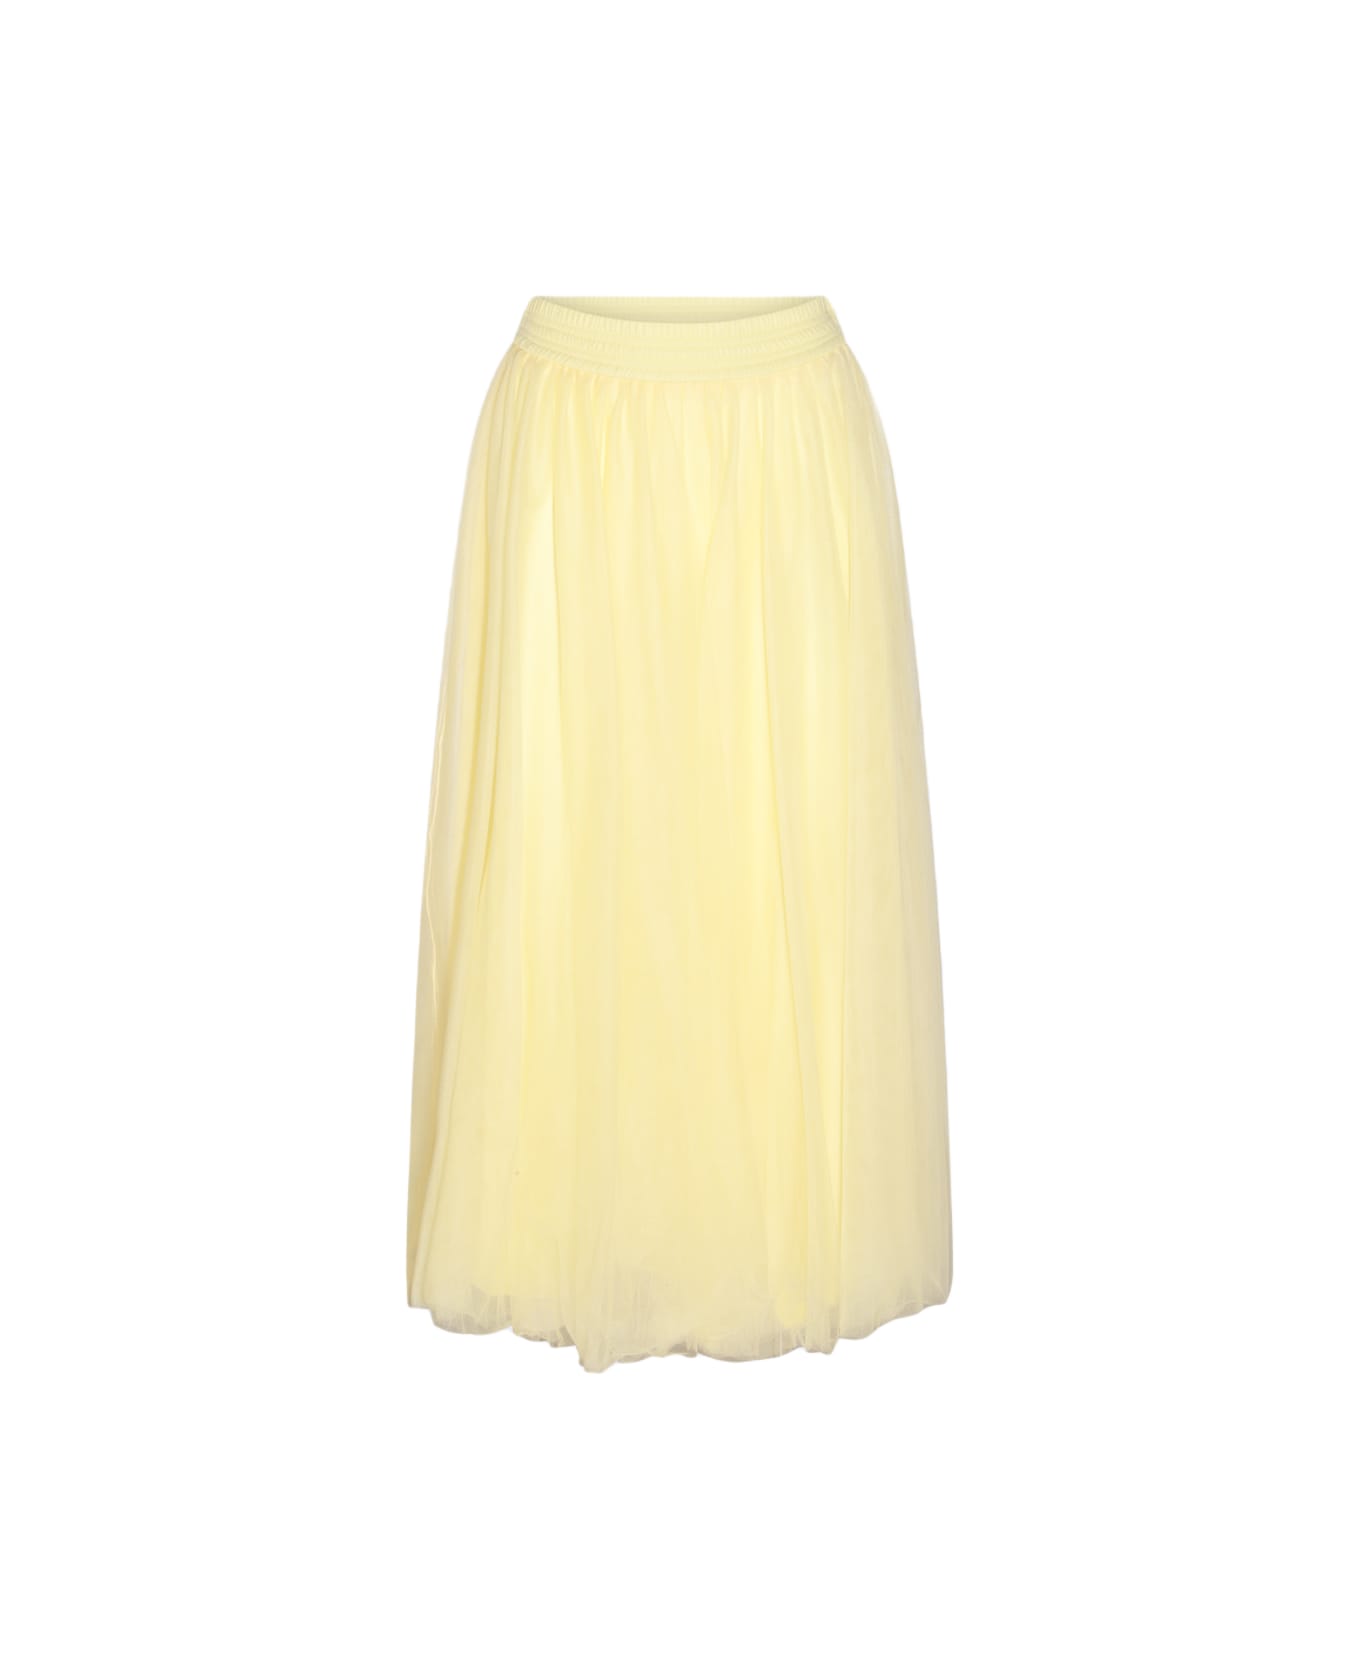 Fabiana Filippi Yellow Skirt - Yellow スカート